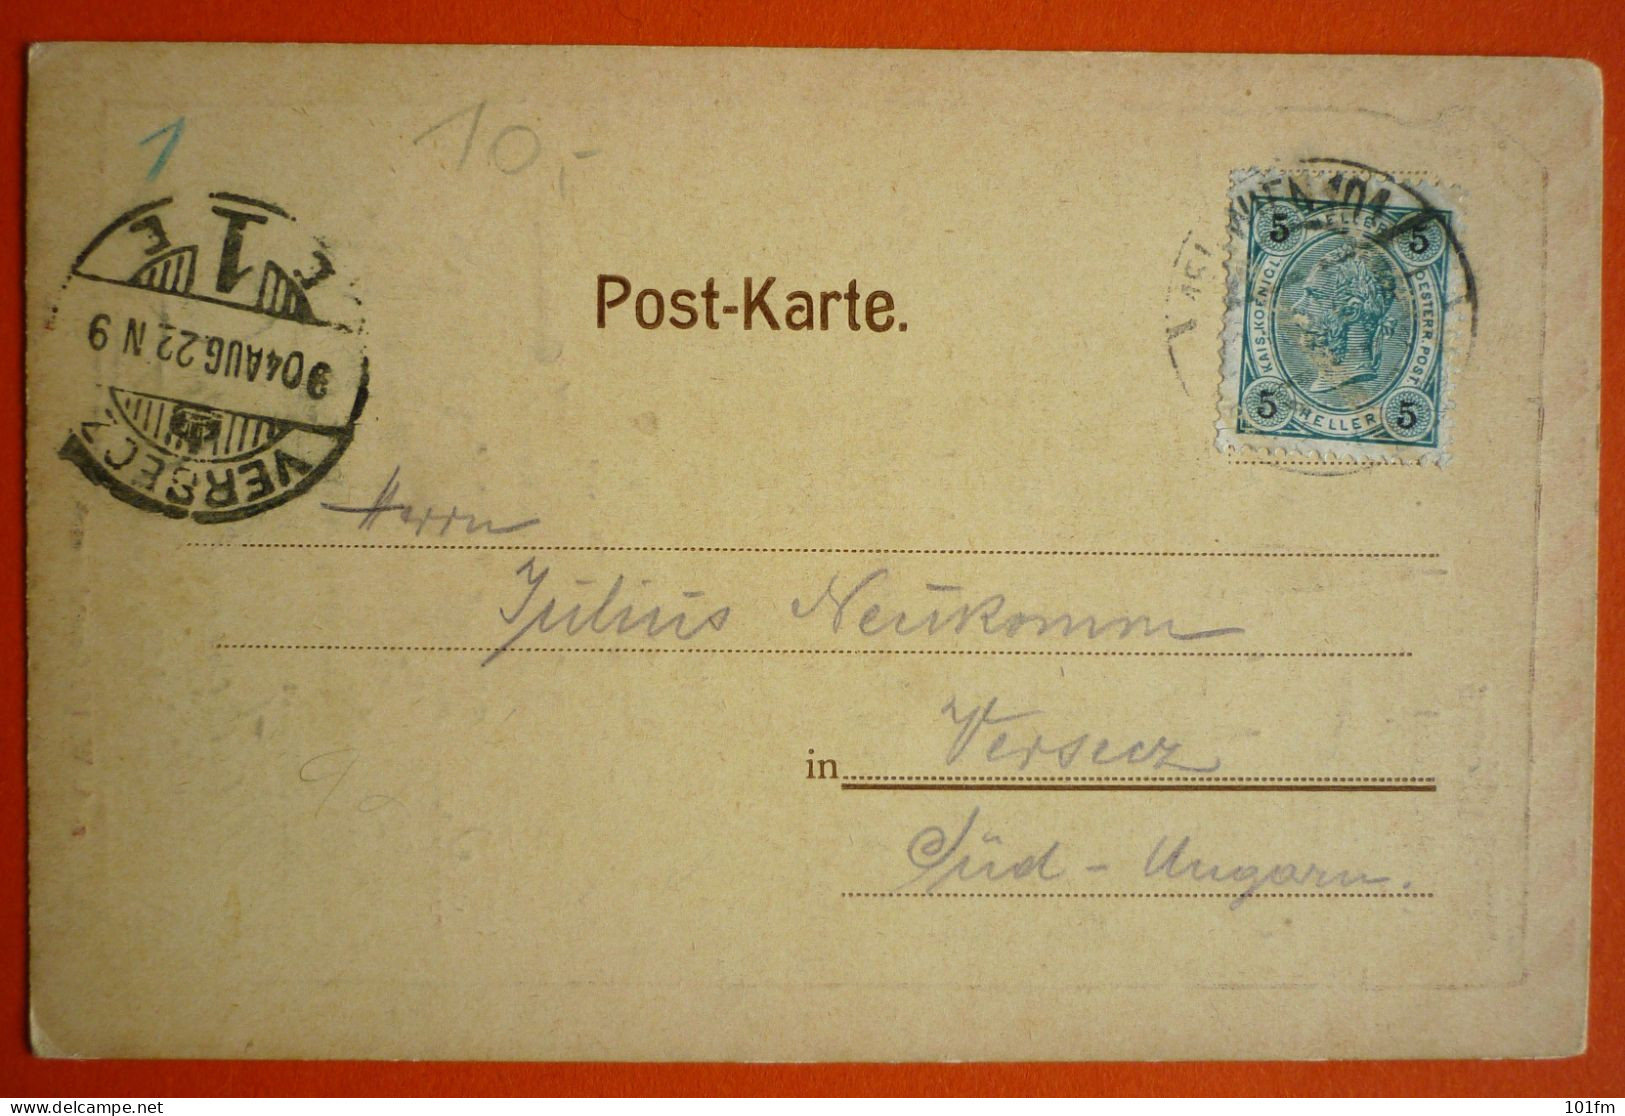 AUSTRIA - WIEN - RATHHAUS KELLER 1904 - Wien Mitte